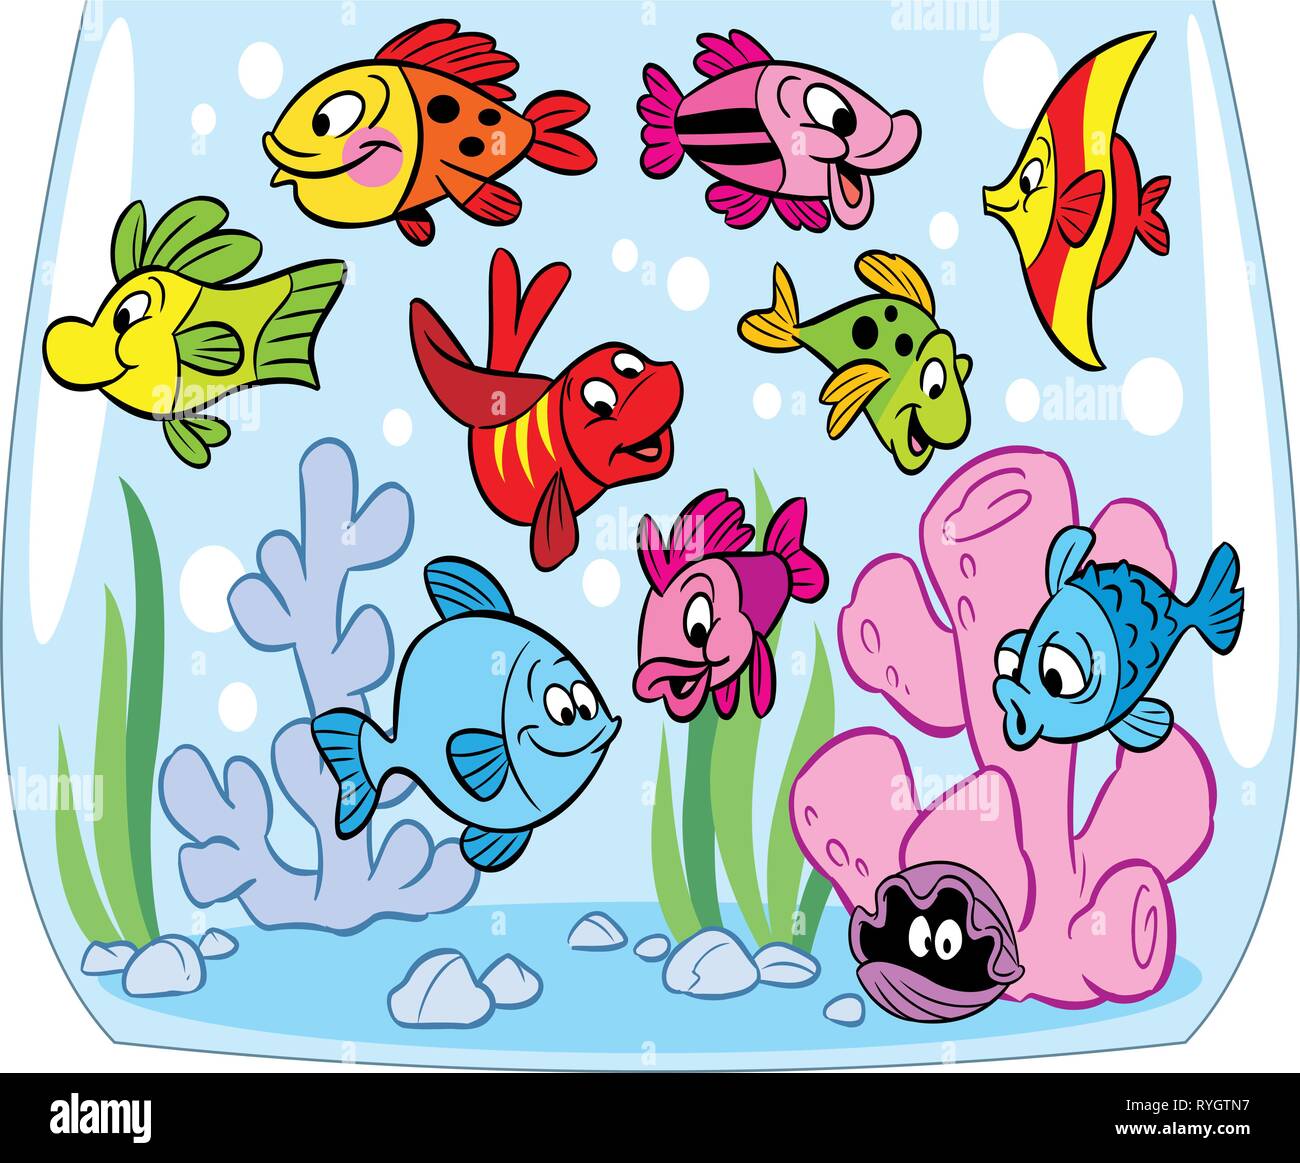 Funny cartoon poissons nagent dans un aquarium. Au bas du crabe, l'algue et la décoration. Illustration faite sur des calques distincts. Illustration de Vecteur